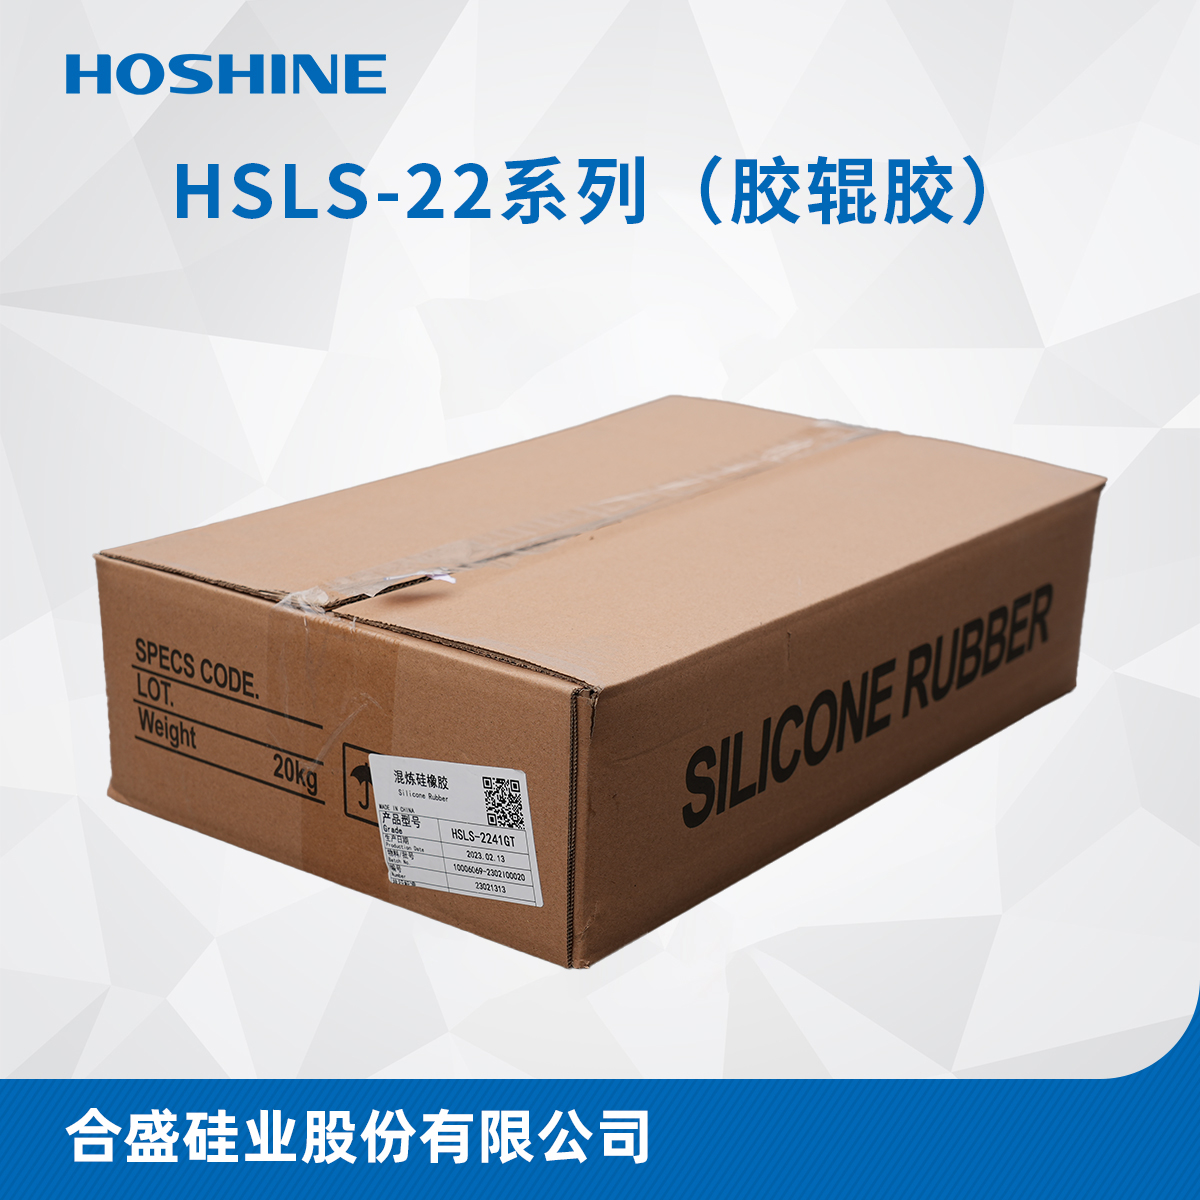 HSLS-22系列（沉淀胶辊胶）